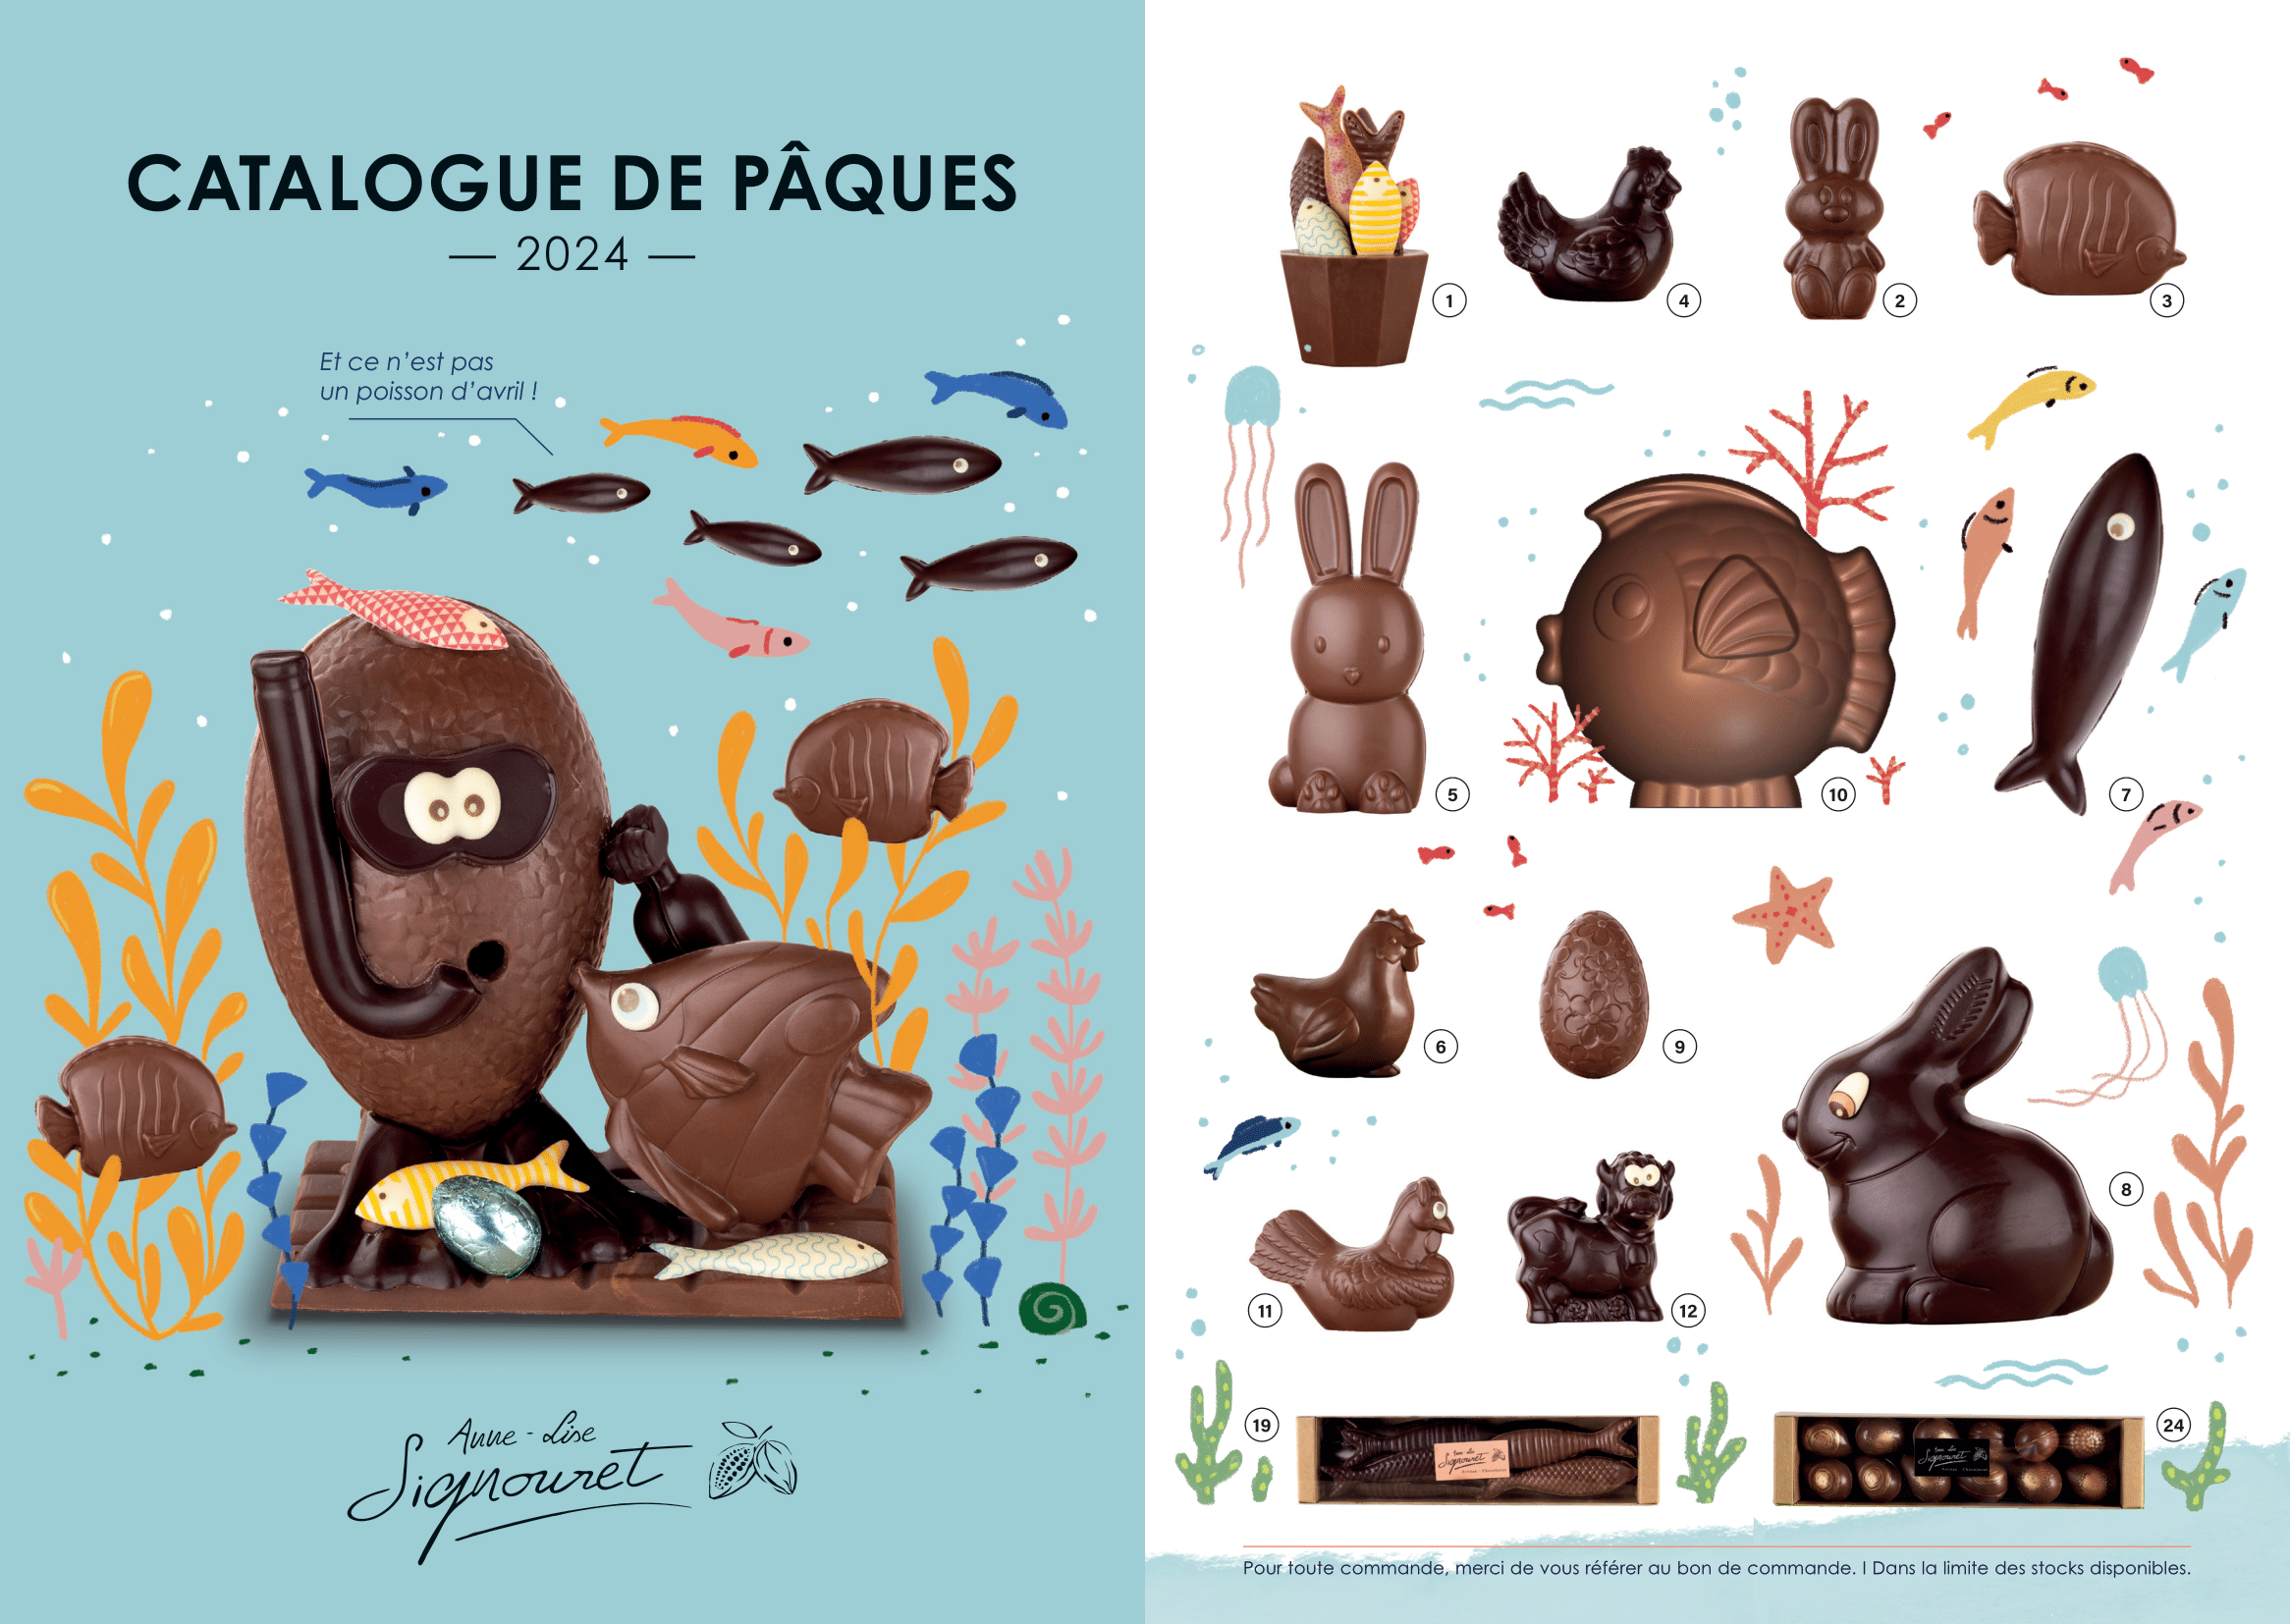 Chocolats et œufs de Pâques catalogue de paques sujets oeufs sardines chocolat artisanal